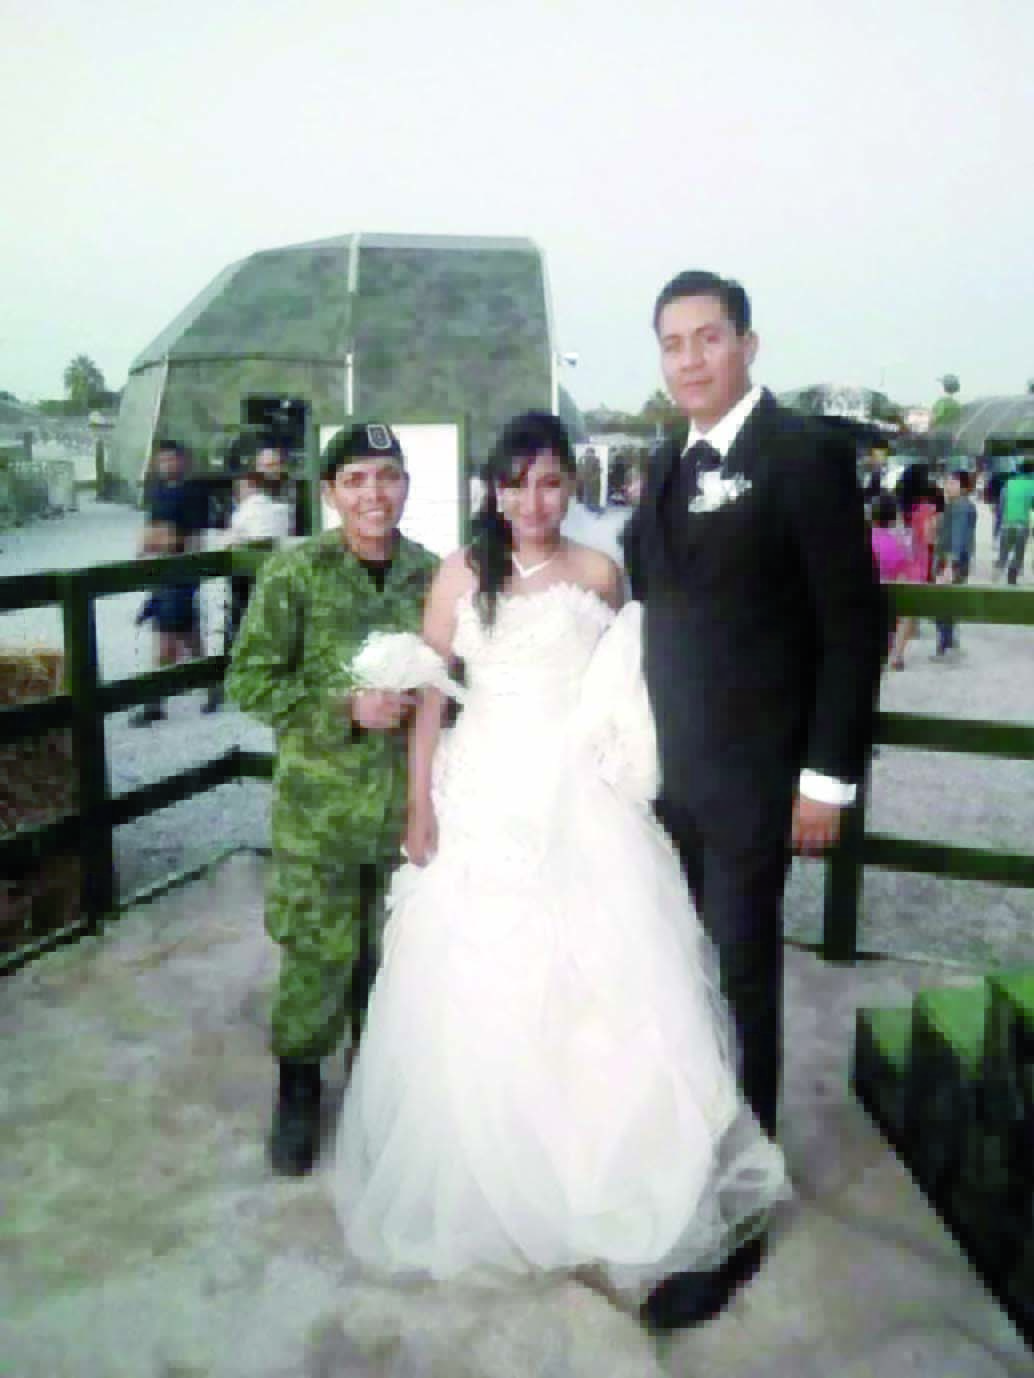 Se casan en la Expo Militar